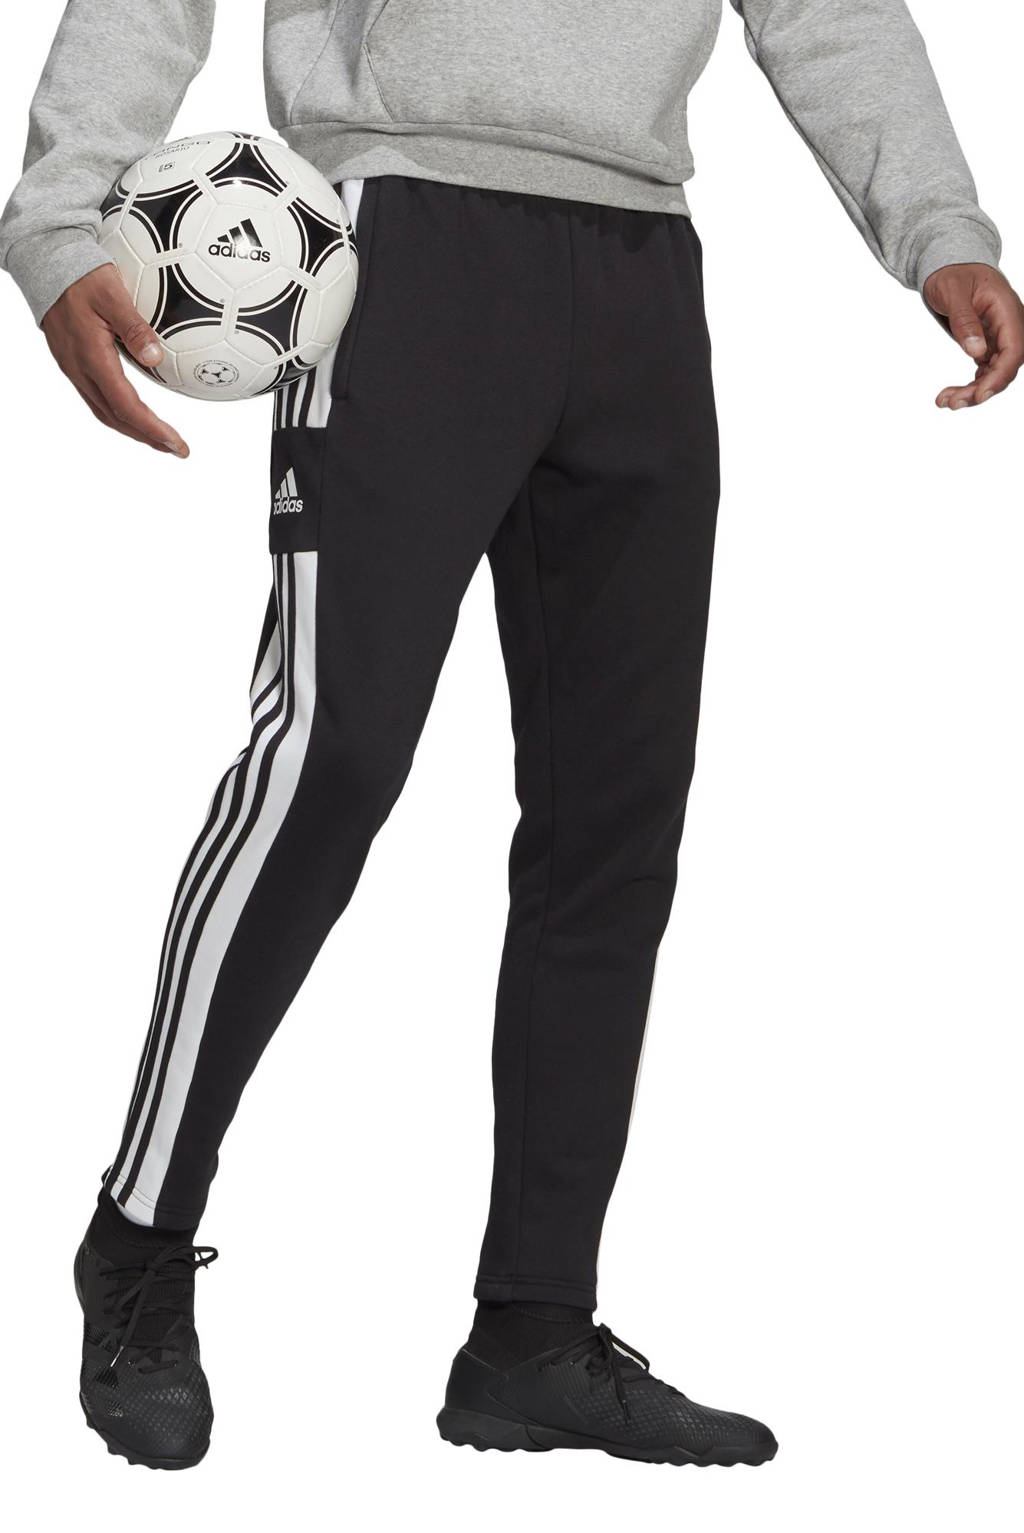 koppeling Oxideren Kneden adidas Performance Senior Squadra 21 joggingbroek zwart | wehkamp